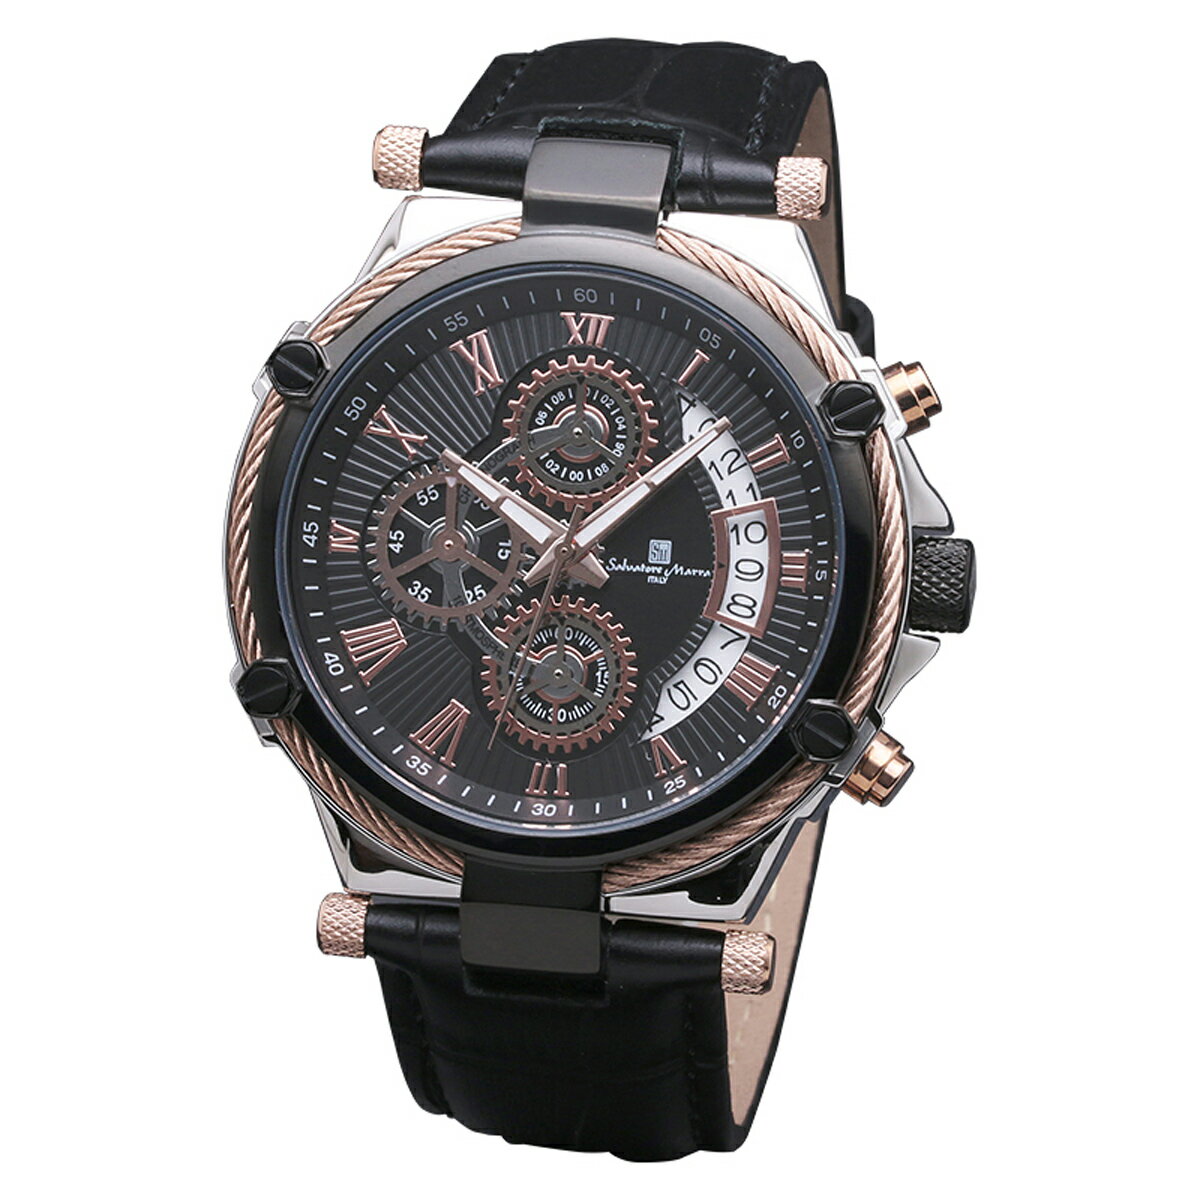 サルバトーレマーラ Salavatore Marra 腕時計 SM18102-PGBK クオーツ クロノグラフ メンズ腕時計 レザーベルト ローマ数字 アナログ表示 10気圧防水 紳士用 時計